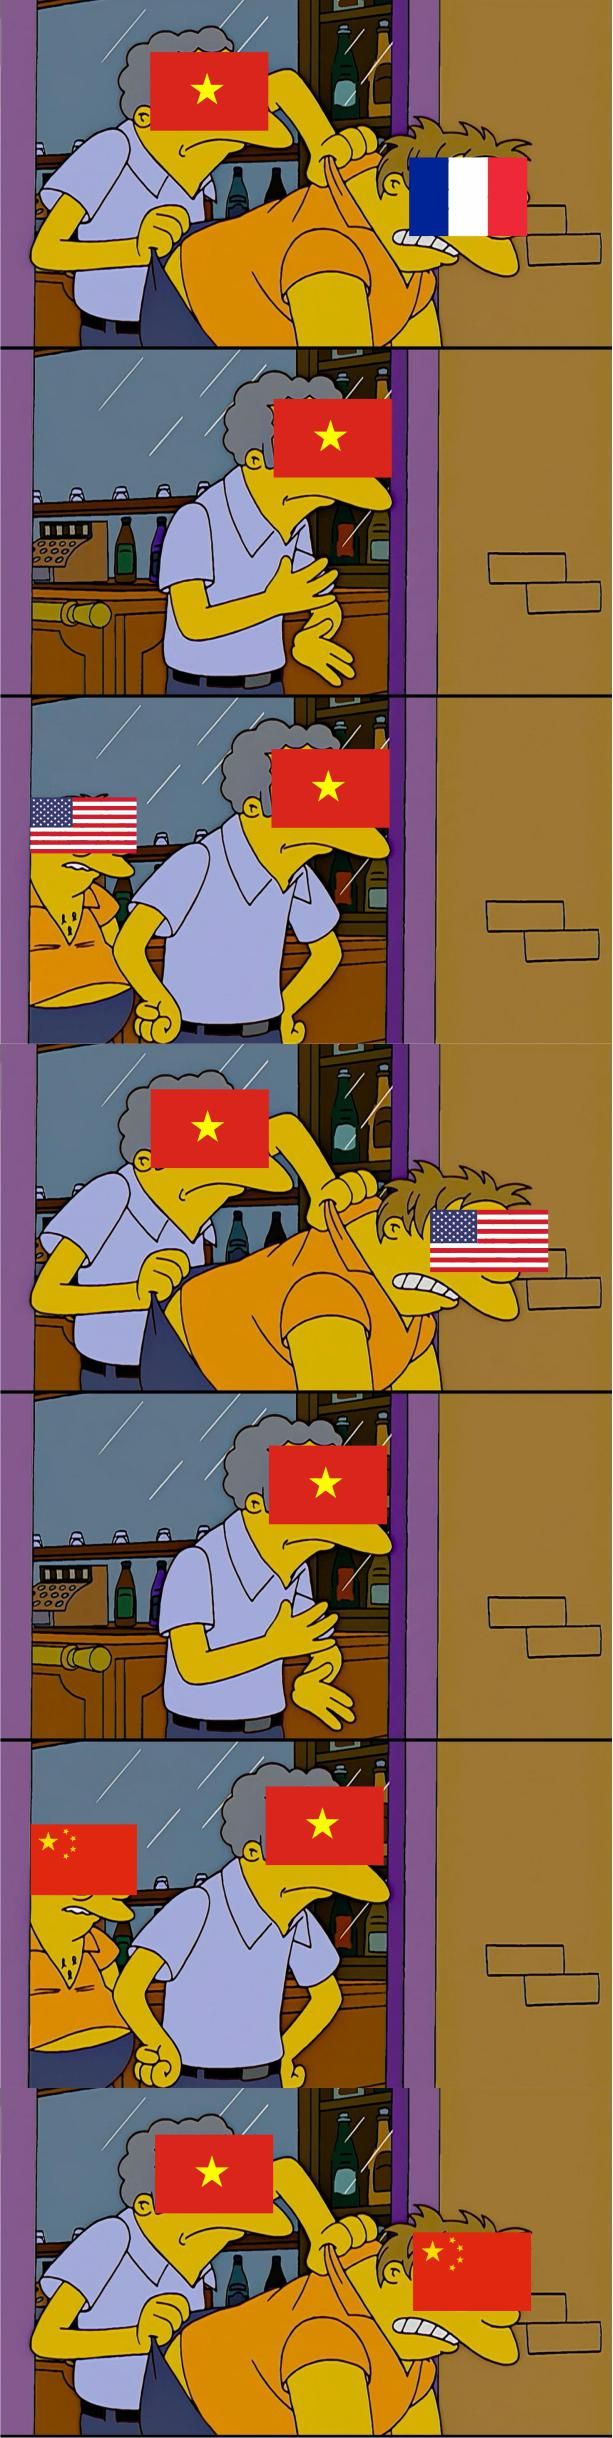 Indochina Wars in a nutshell